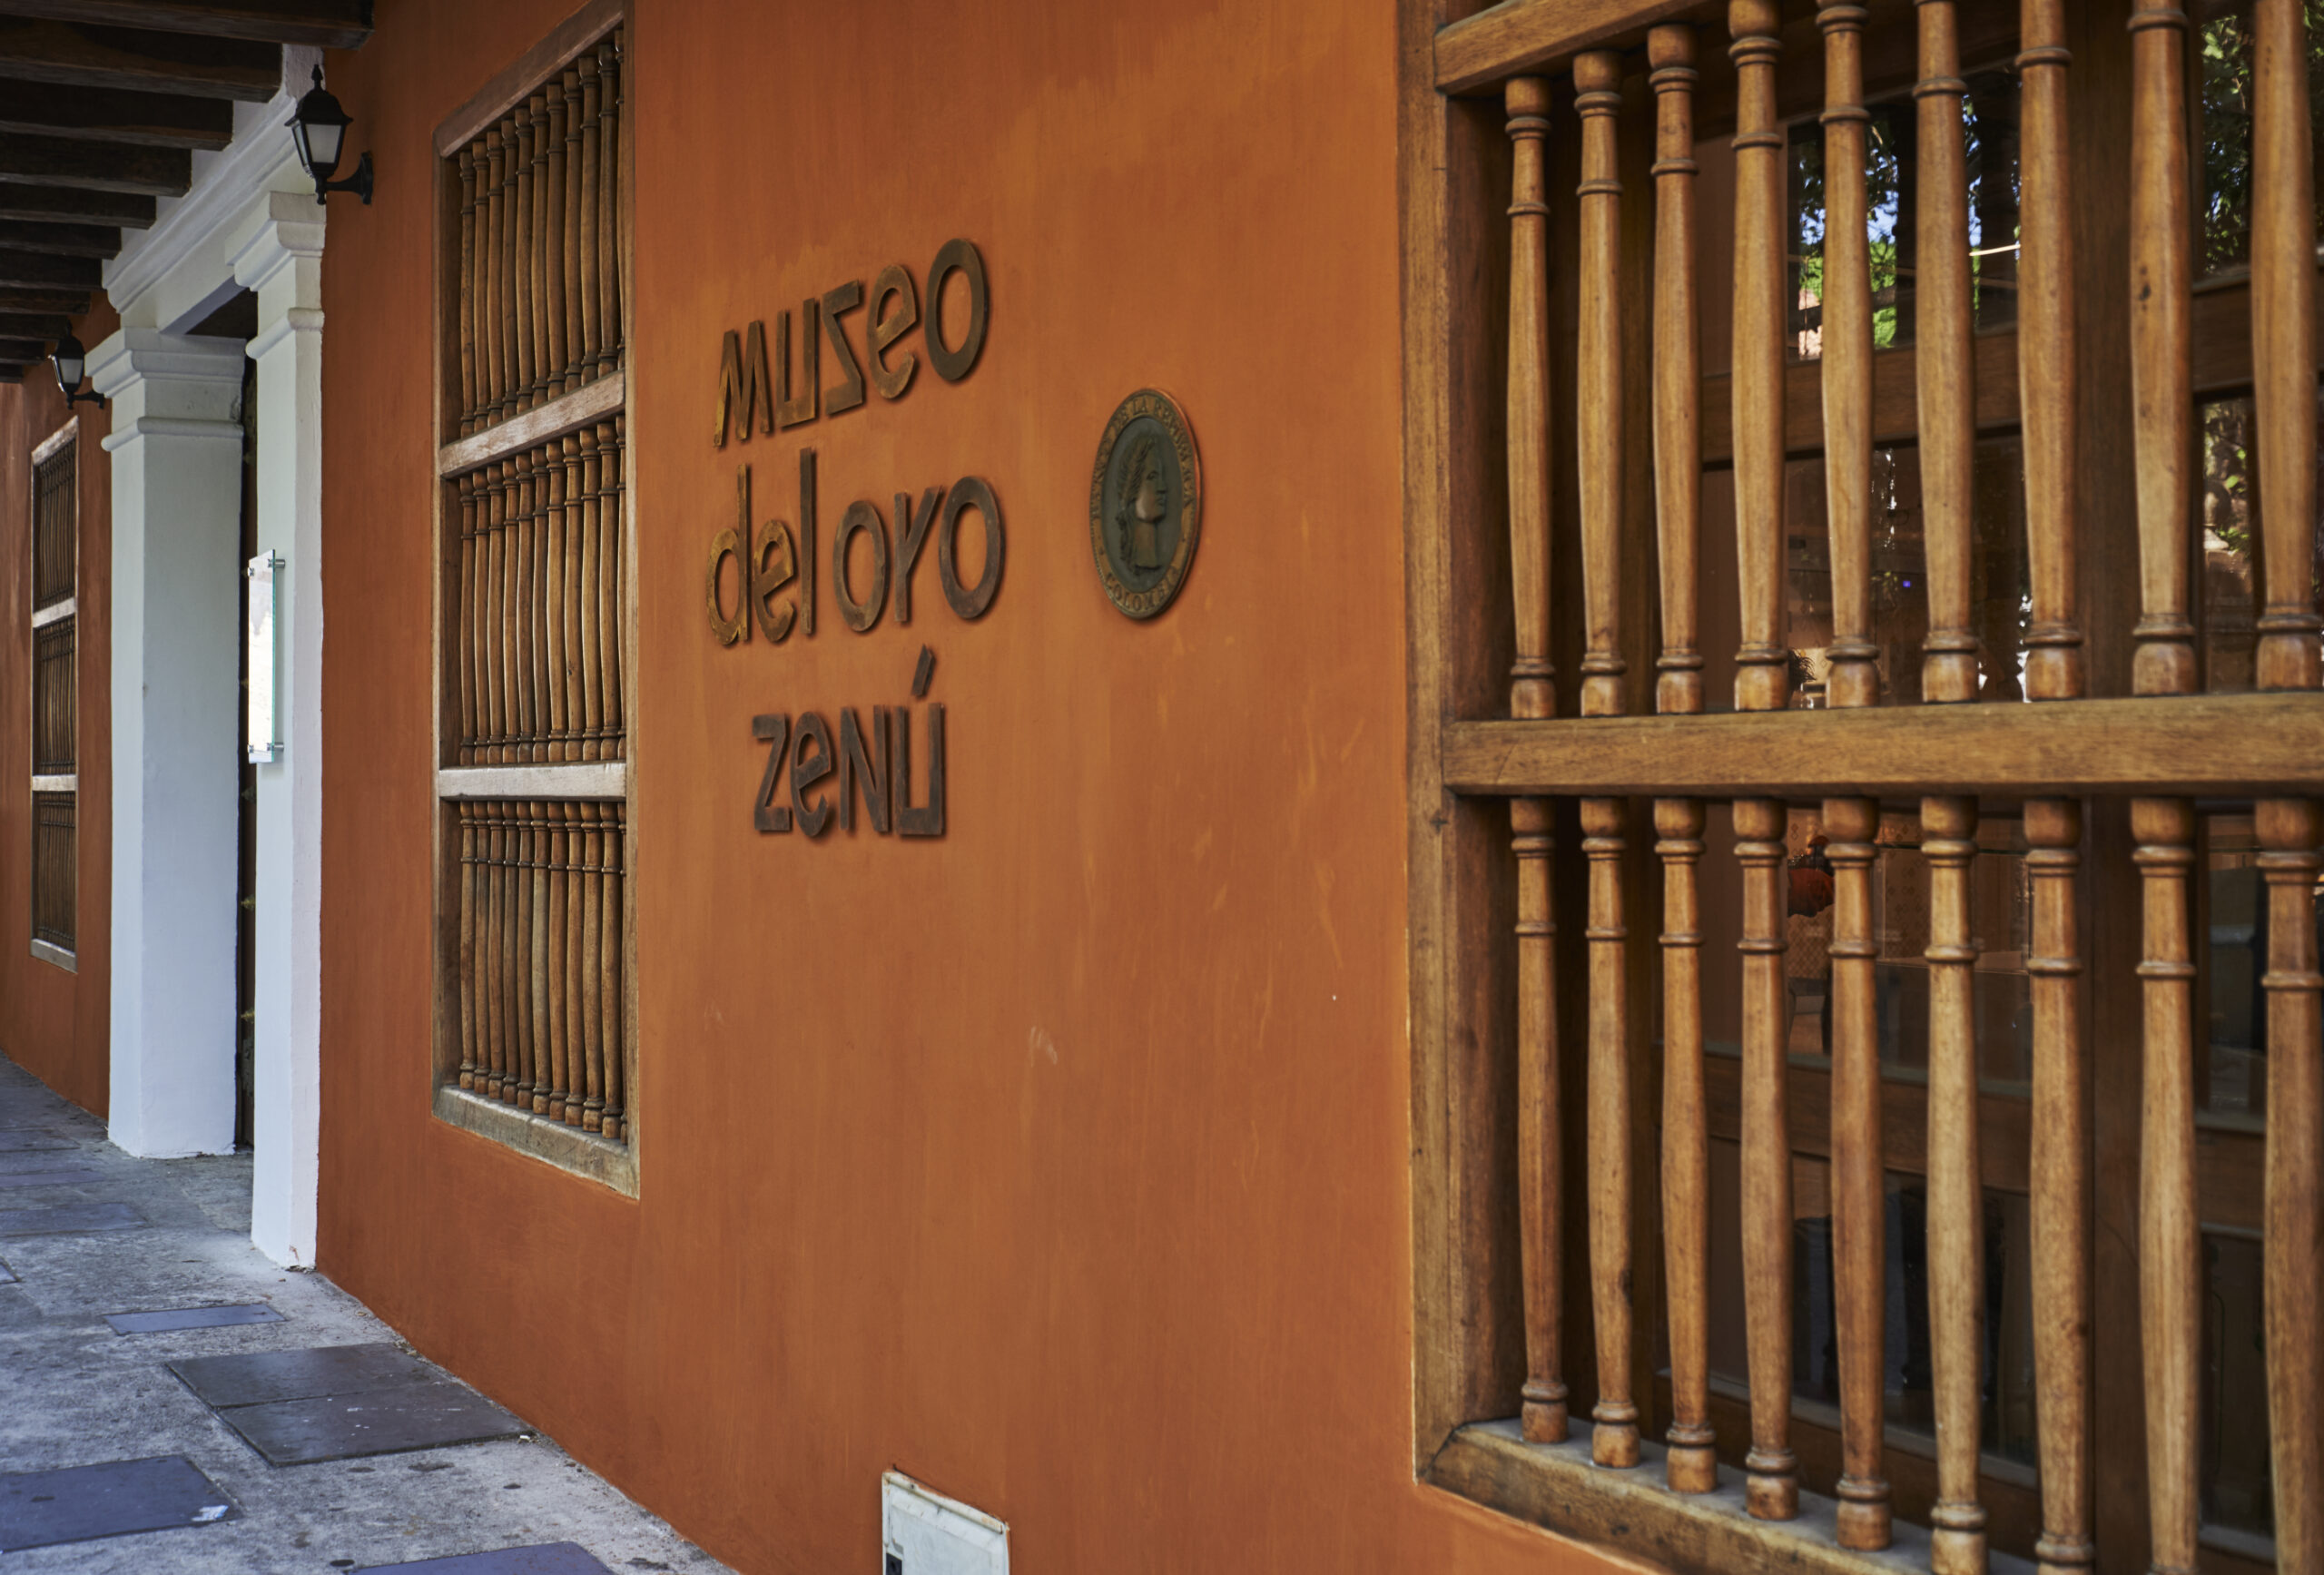 Uma curiosidade sobre o Museo del Oro Zenú: eles possuem peças feitas que foram produzidas pelo próprio povo Zenú.